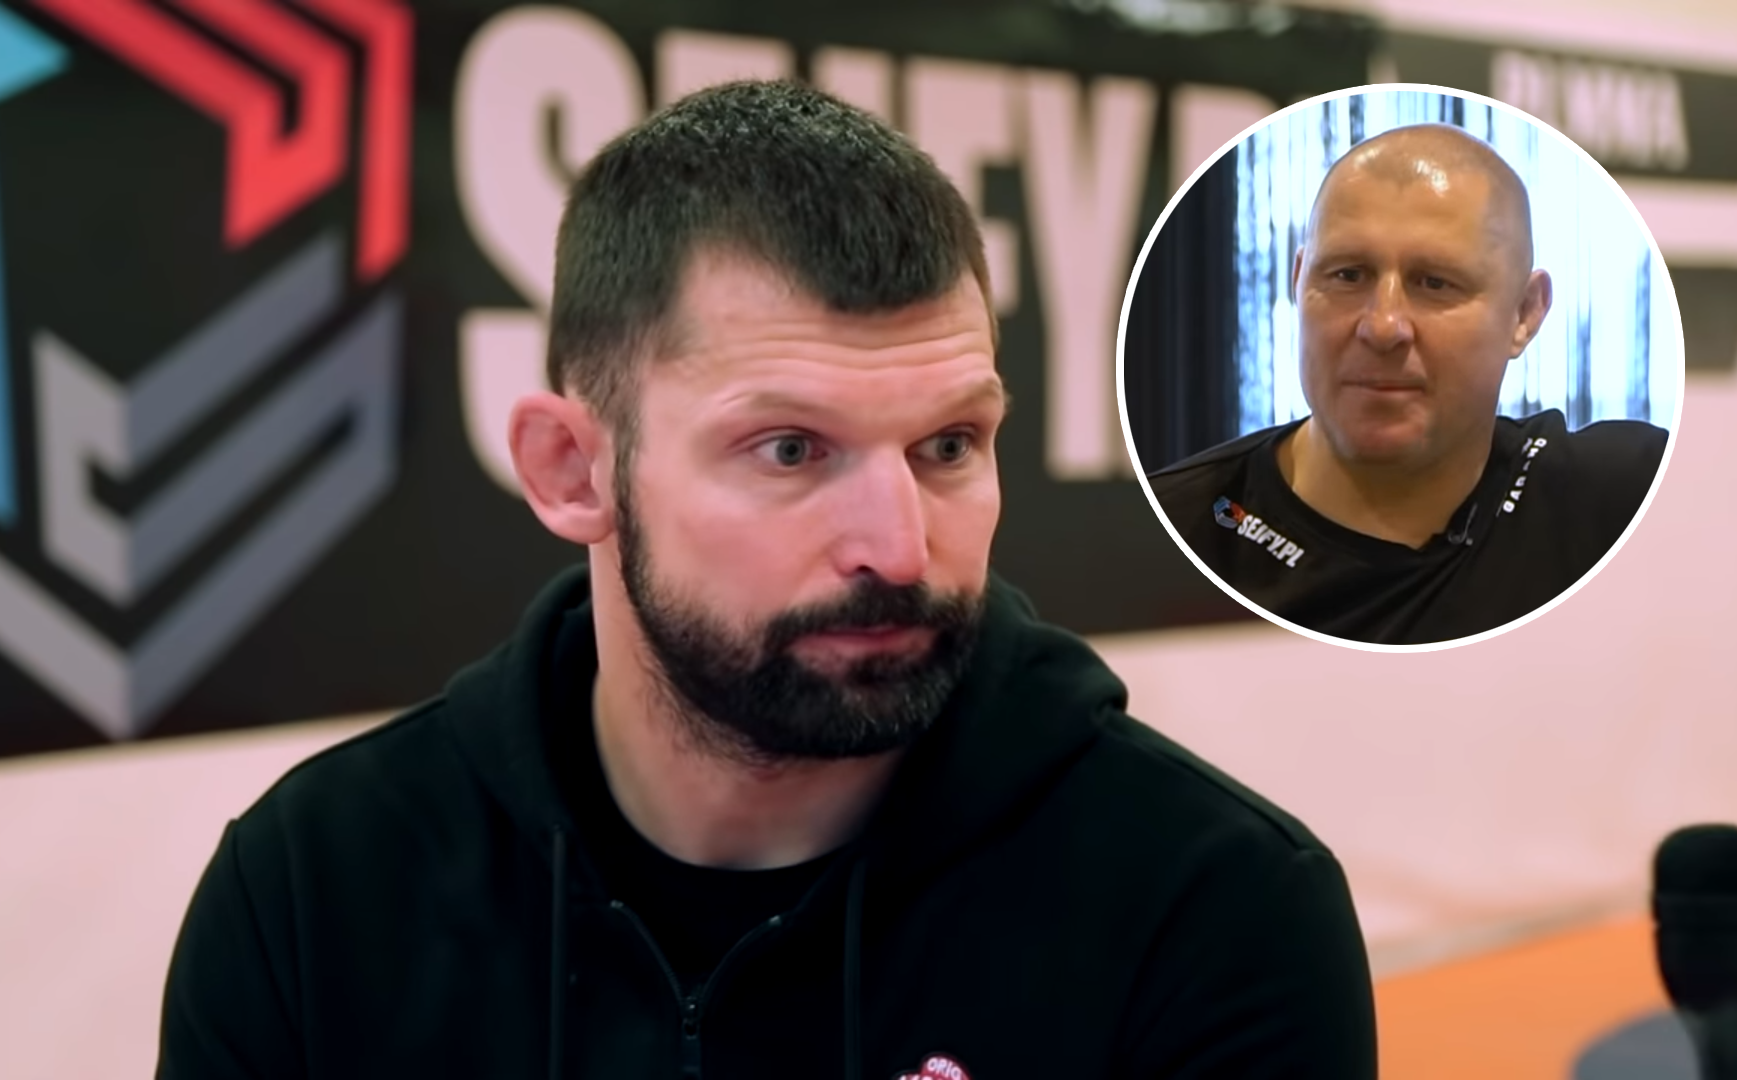 Trener Okniński o przyszłości Kołeckiego: "Myślę, że KSW się z nim pogodzi. A może dostał mega ofertę z FAME MMA"